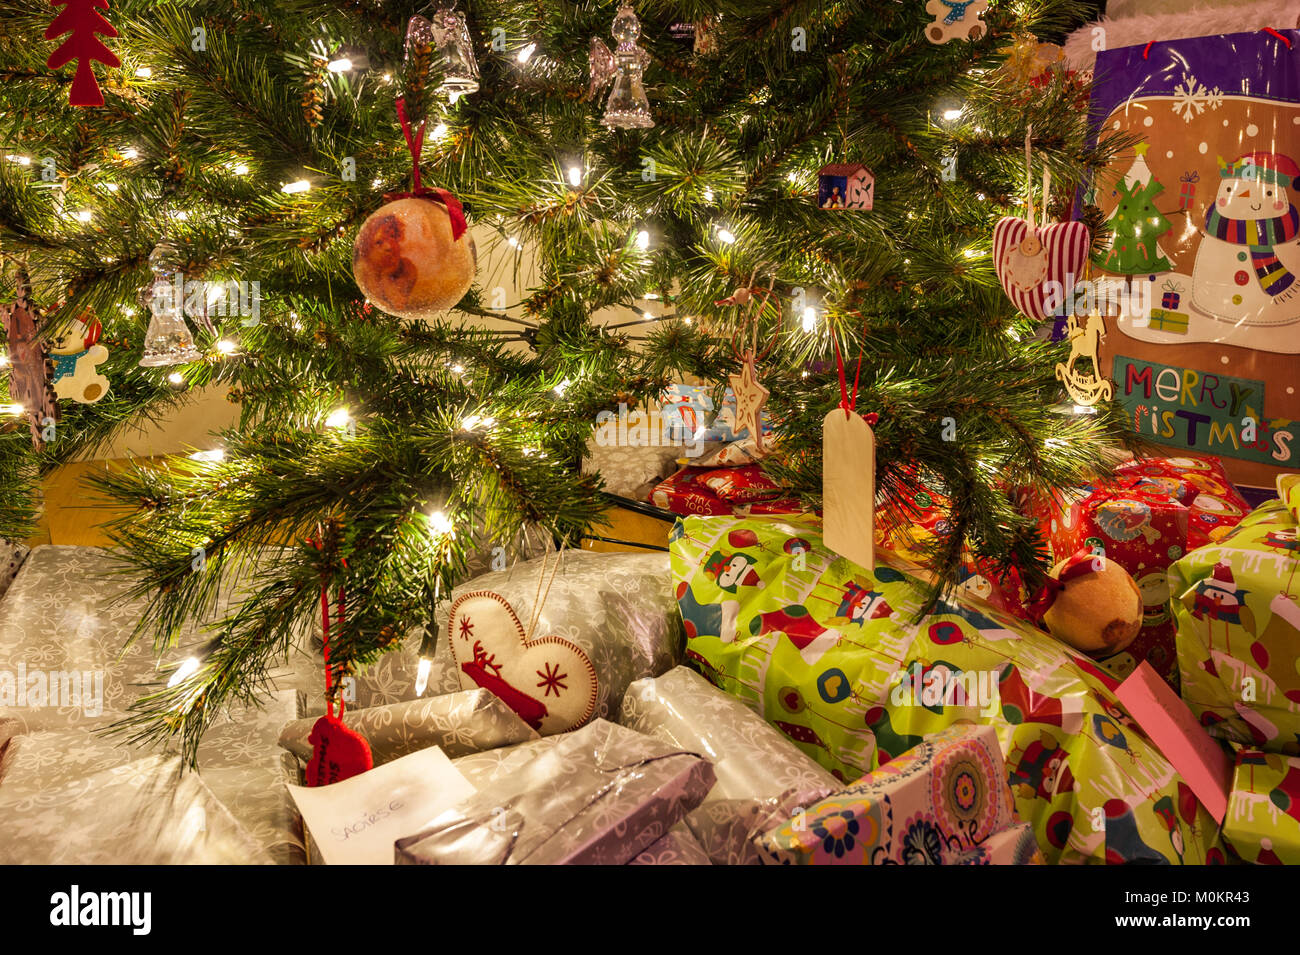 Arbre de Noël avec des décorations, des lumières et des cadeaux de Noël. Banque D'Images